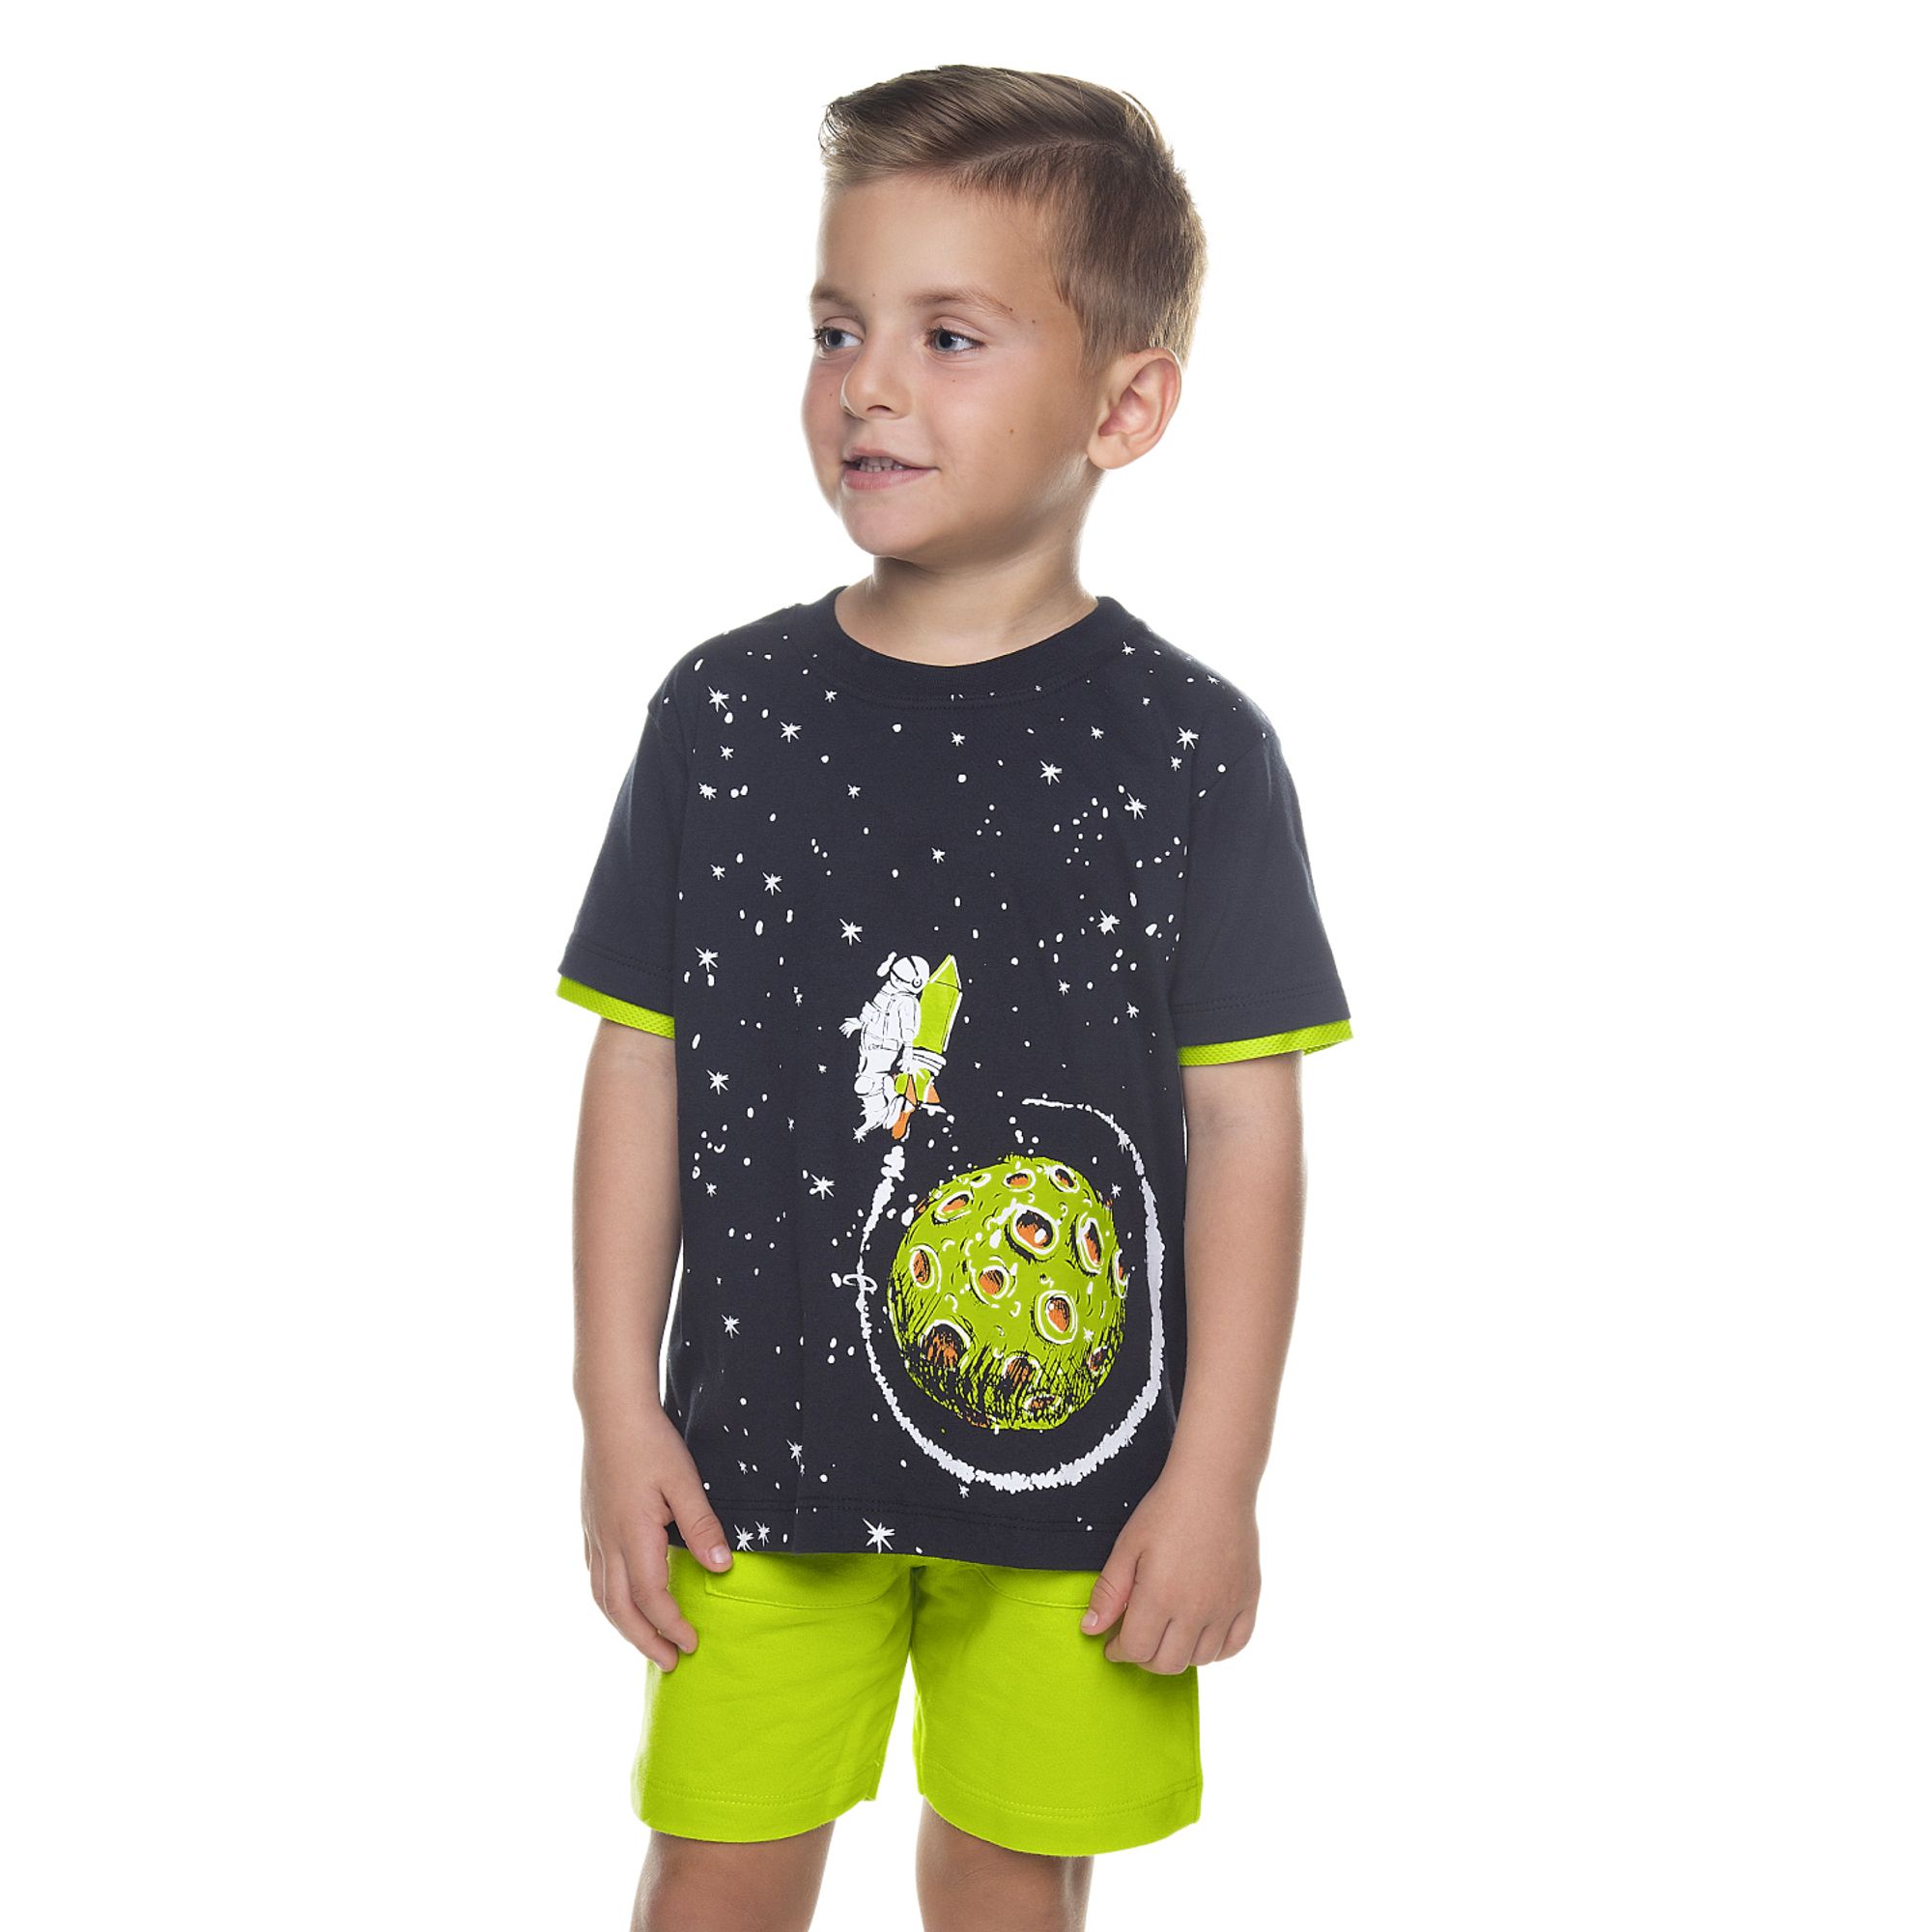 conjunto-meninos-camiseta-preta-espacial-e-bermuda-verde-limao-1